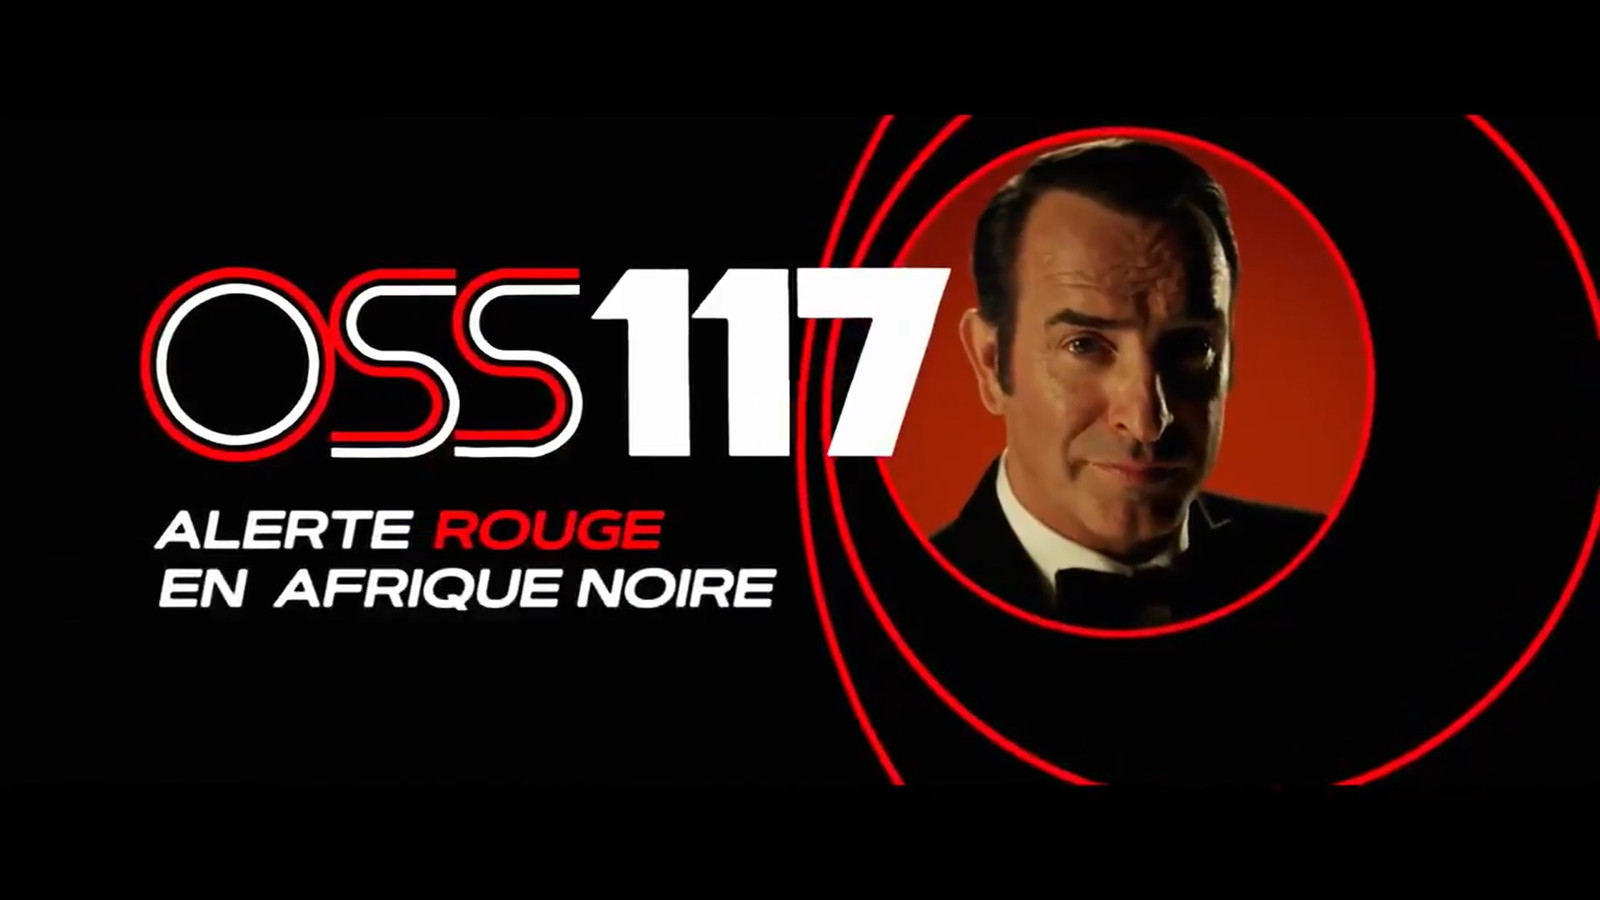 "OSS 117 : Alerte rouge en Afrique noire" est le film de clôture du Festival de Cannes